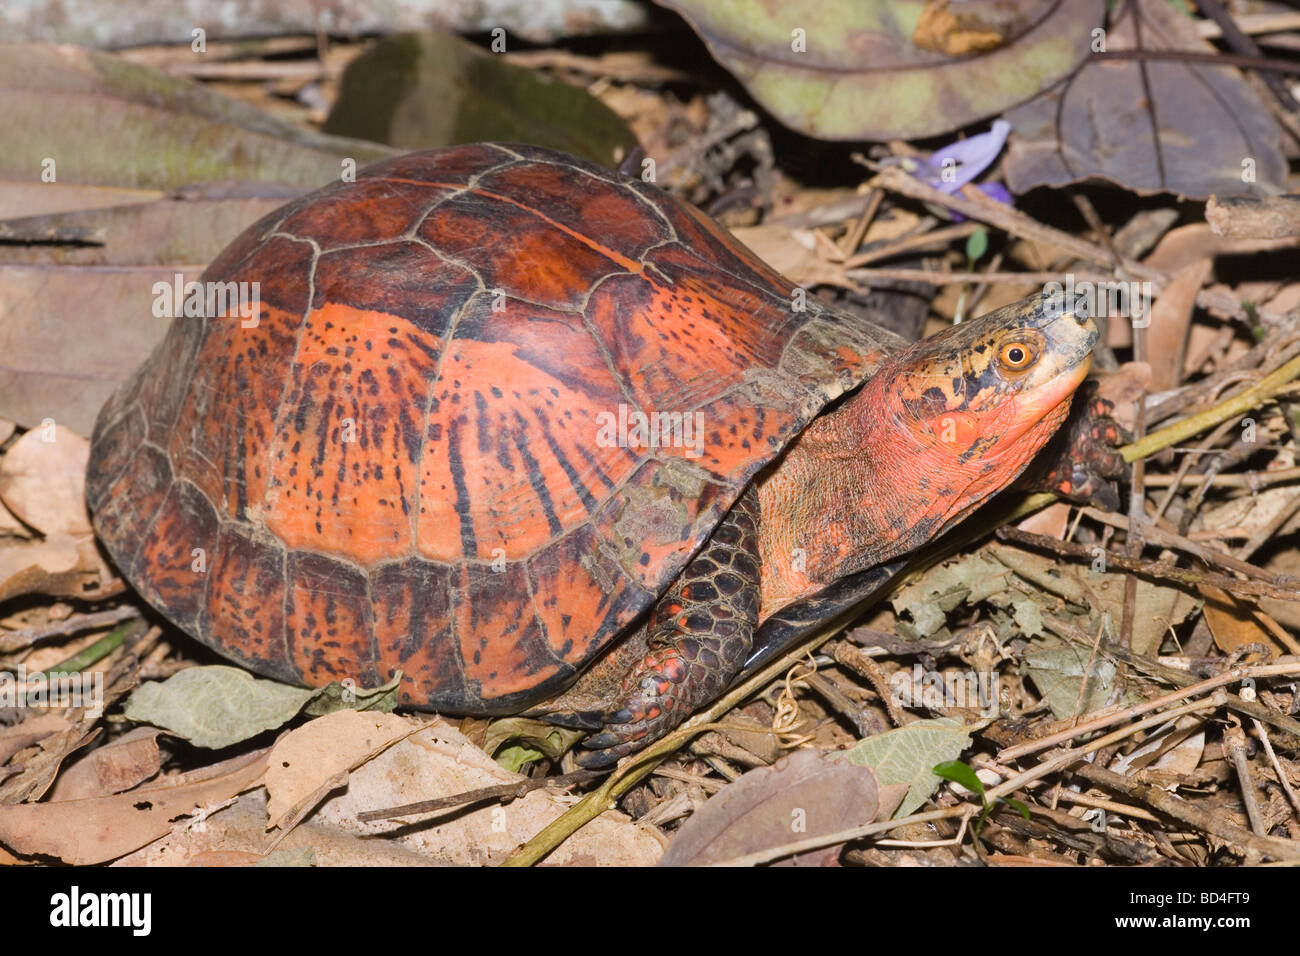 Indochinesischen Flowerback Box Turtle (Cuora galbinifrons). Kopf Vorderbeine aus zwischen oberen und abgesenkt, Shell, Plastron, öffnen. Ungewöhnliche Farbe Variante. ​ Stockfoto